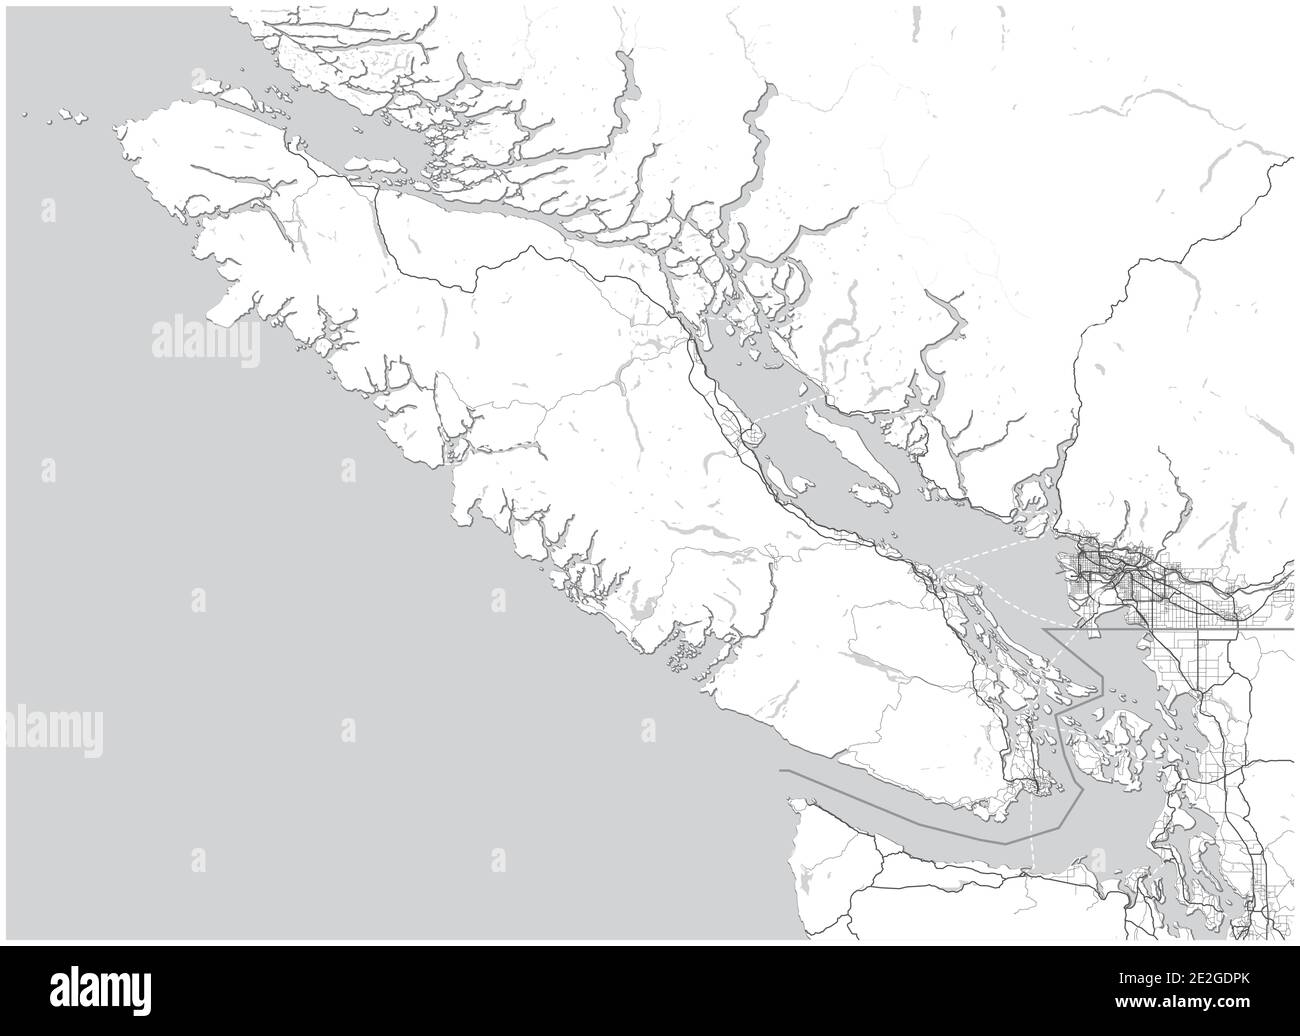 Carte de l'île de Vancouver avec le Grand Vancouver (Colombie-Britannique), le Canada et certaines parties de l'État de Washington (États-Unis). Carte d'échelle de gris simple sans texte Illustration de Vecteur